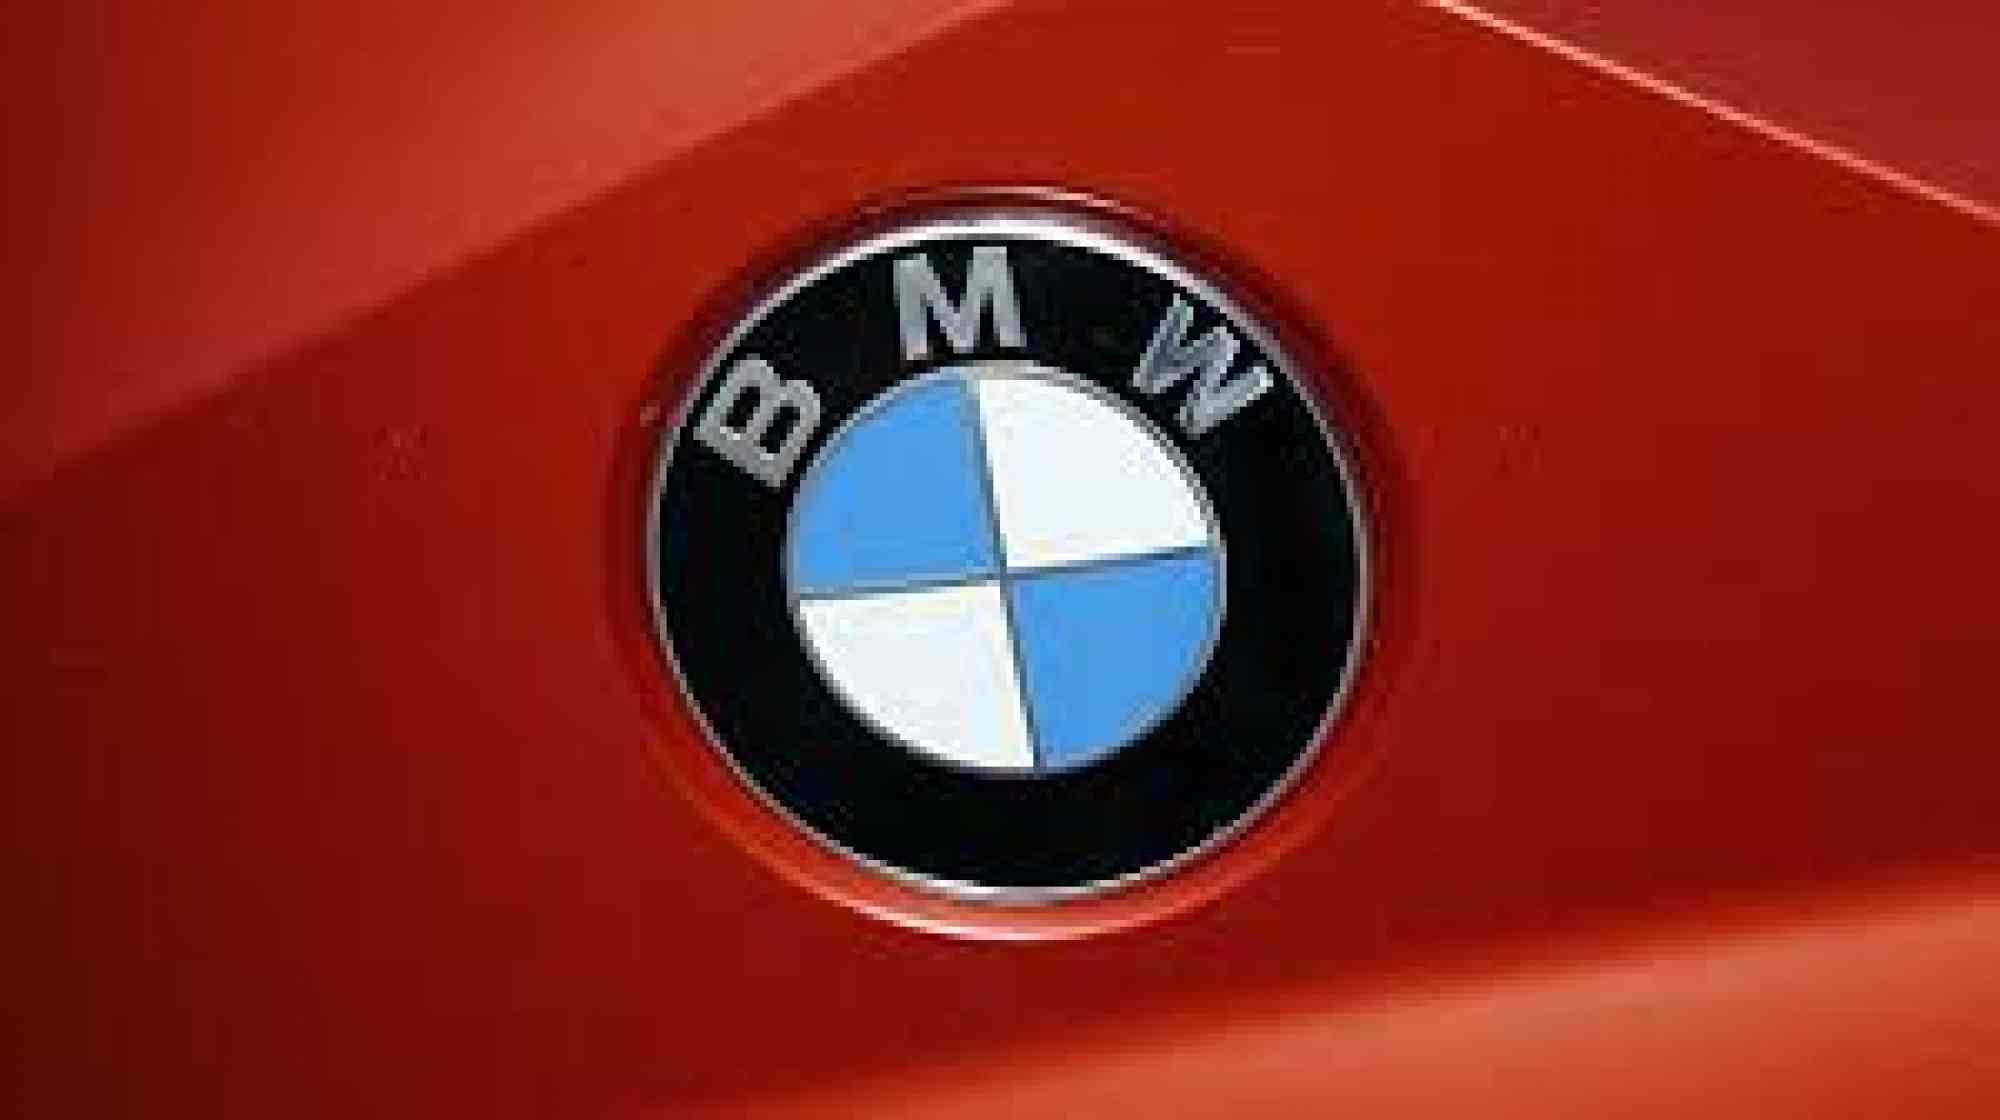 Venta de autos usados, Carros usados en venta - Todoclasificados, IMPORTAMOS TODO TIPO DE REPUESTO BMW